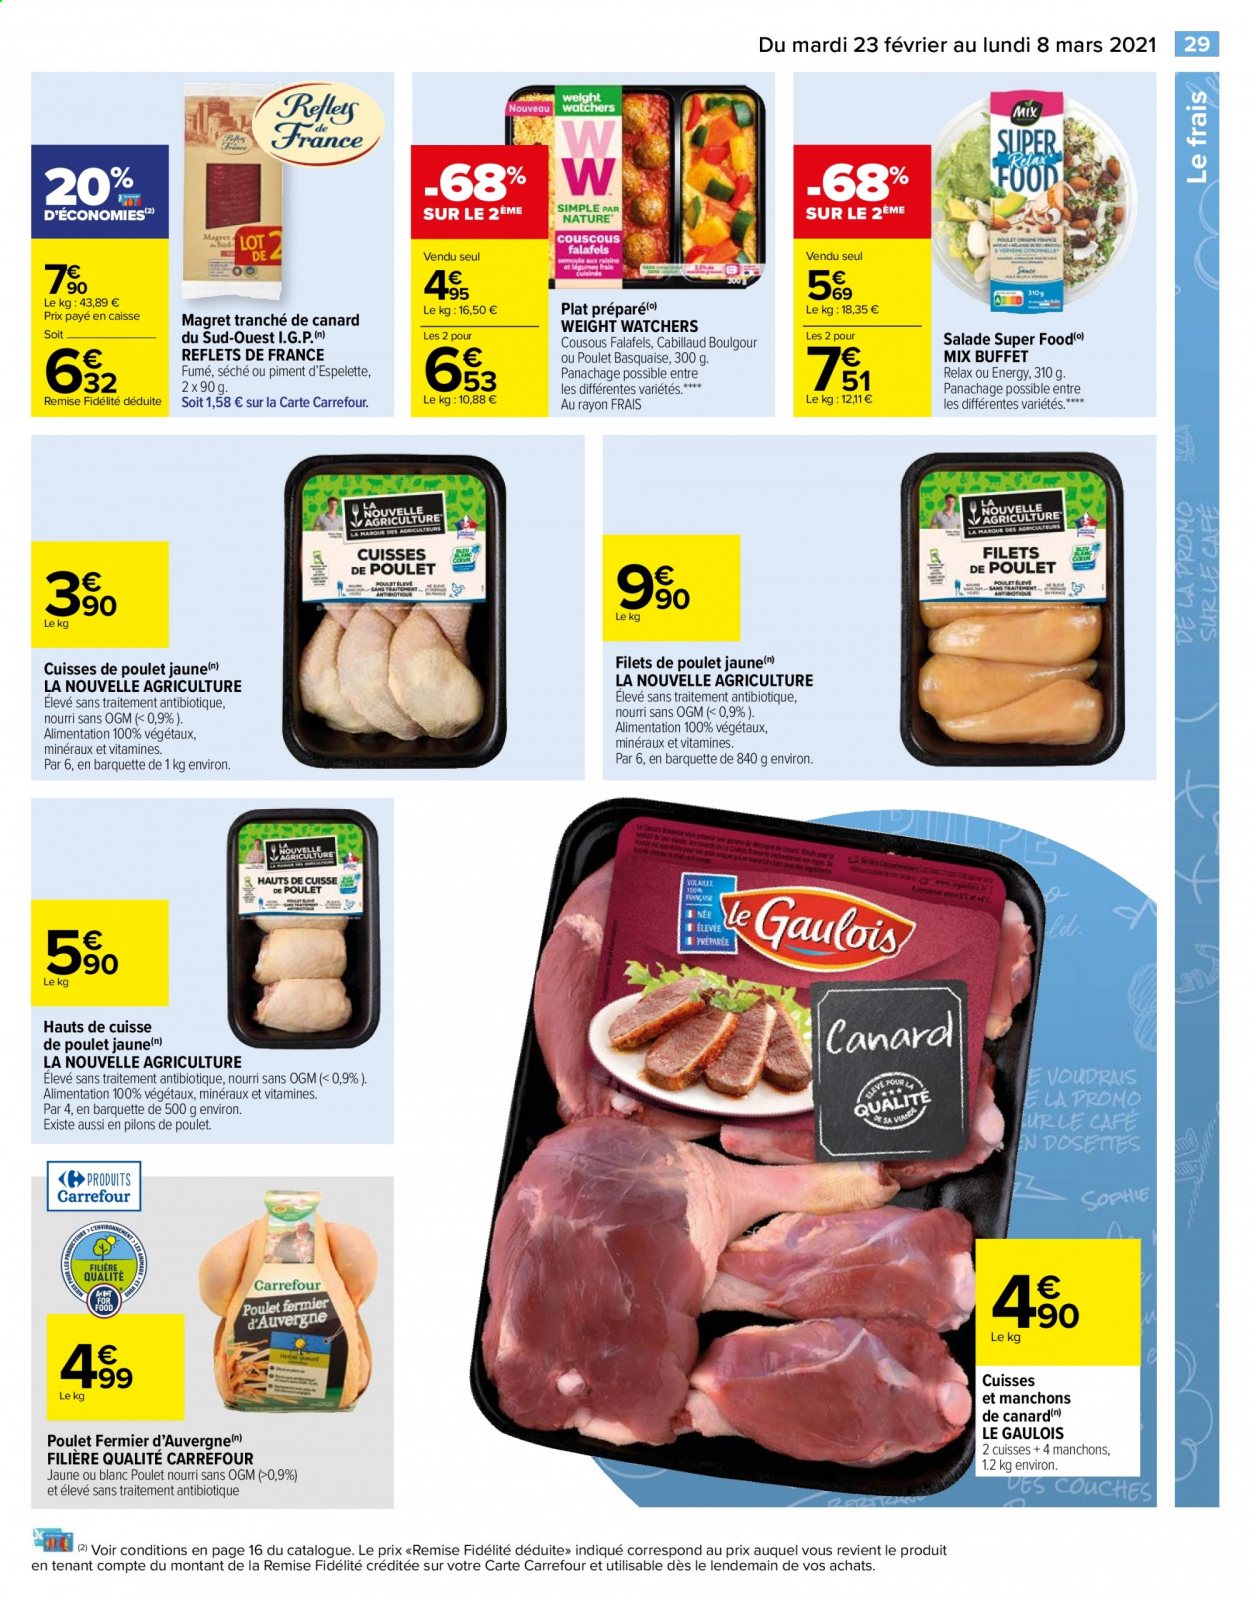 thumbnail - Catalogue Carrefour Hypermarchés - 23/02/2021 - 08/03/2021 - Produits soldés - salade, filet de poulet, manchons de canard, cuisses de poulet, viande de poulet, pilons de poulet, cuisse de poulet, couscous, café, couches. Page 29.